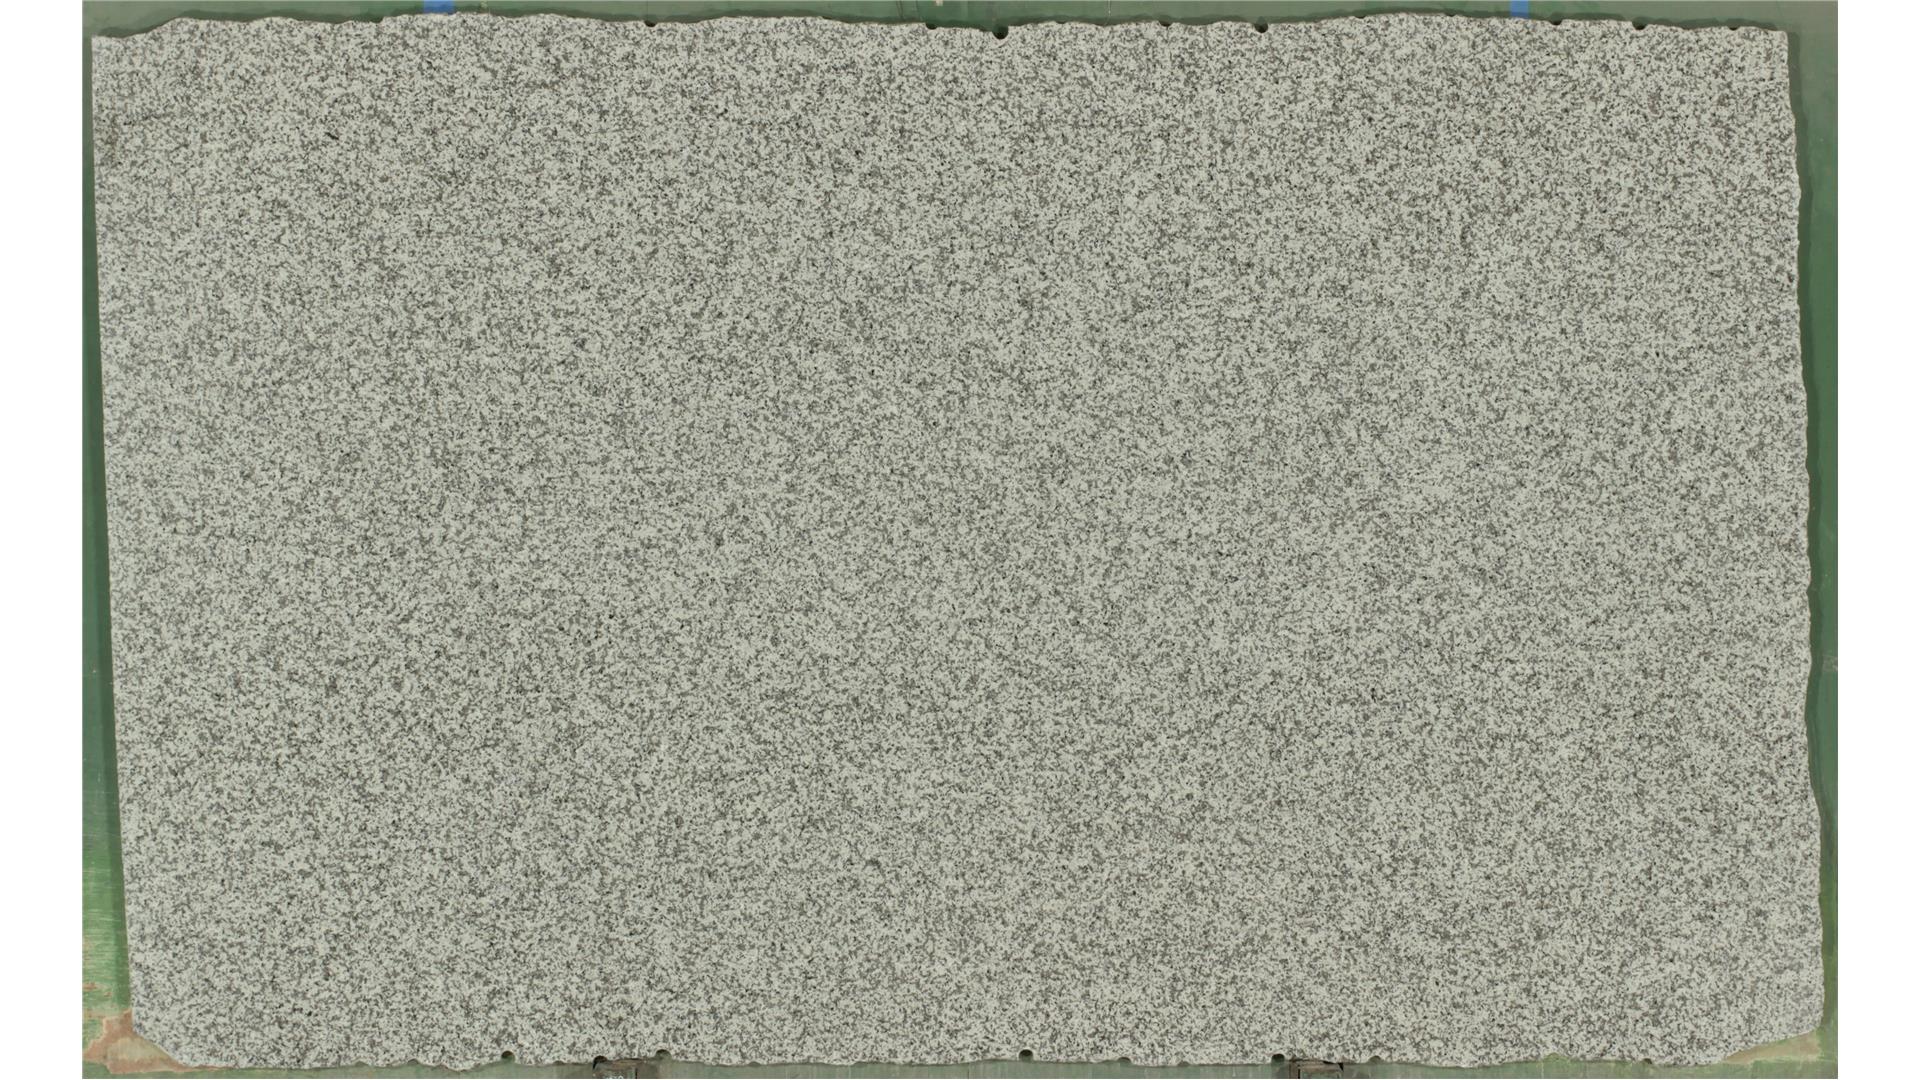 White Sand Dollar 3 cm Granite Slabs